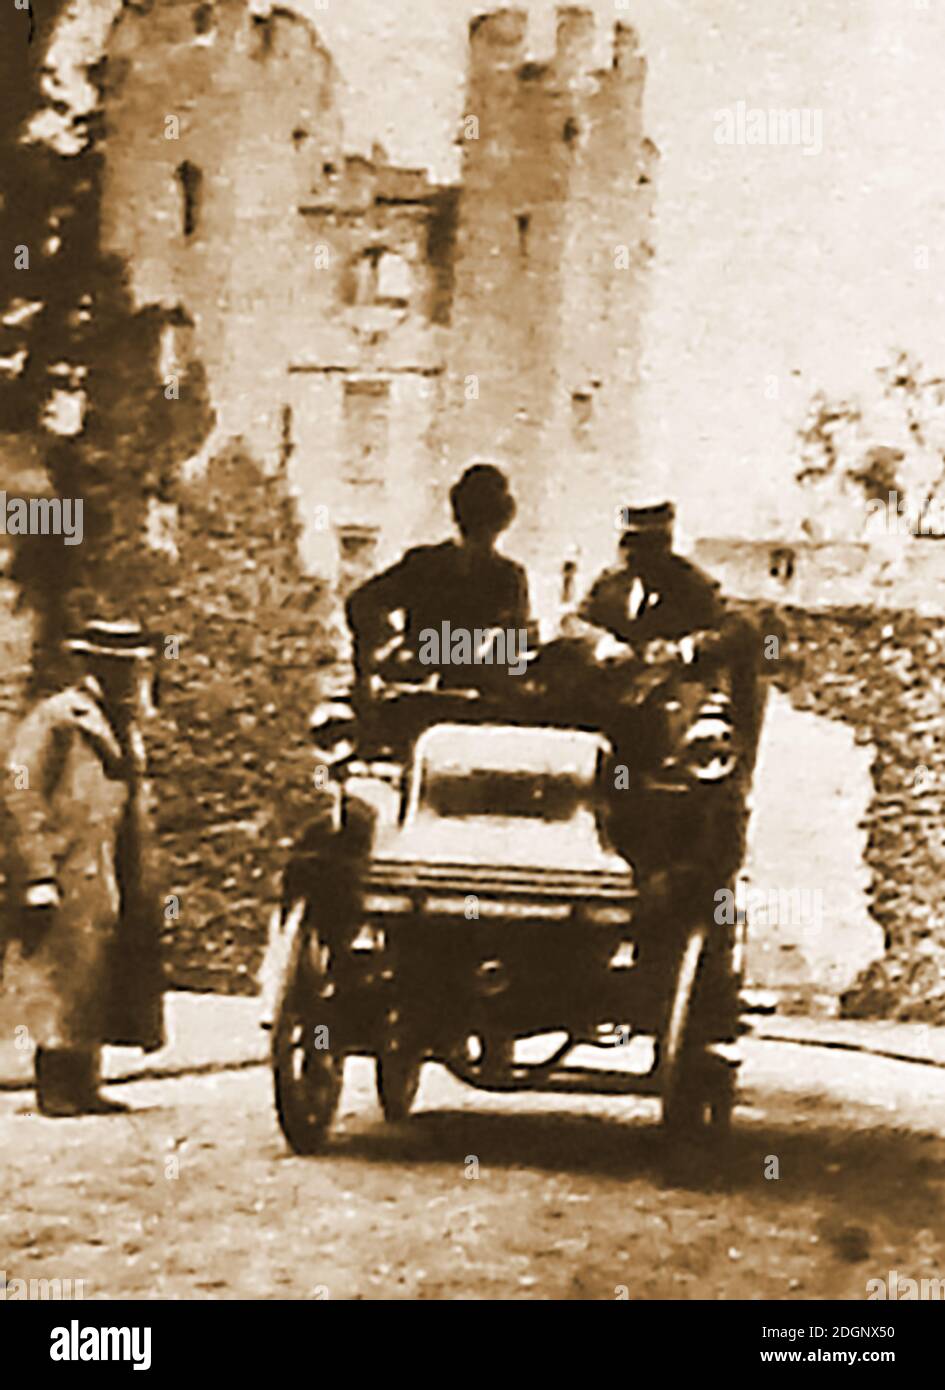 1898 photo d'une nouvelle voiture à moteur présentée à un aristocrate anglais dans les jardins de son château, à un moment où seuls les riches pouvaient se permettre d'acheter une voiture en toute propriété. Banque D'Images